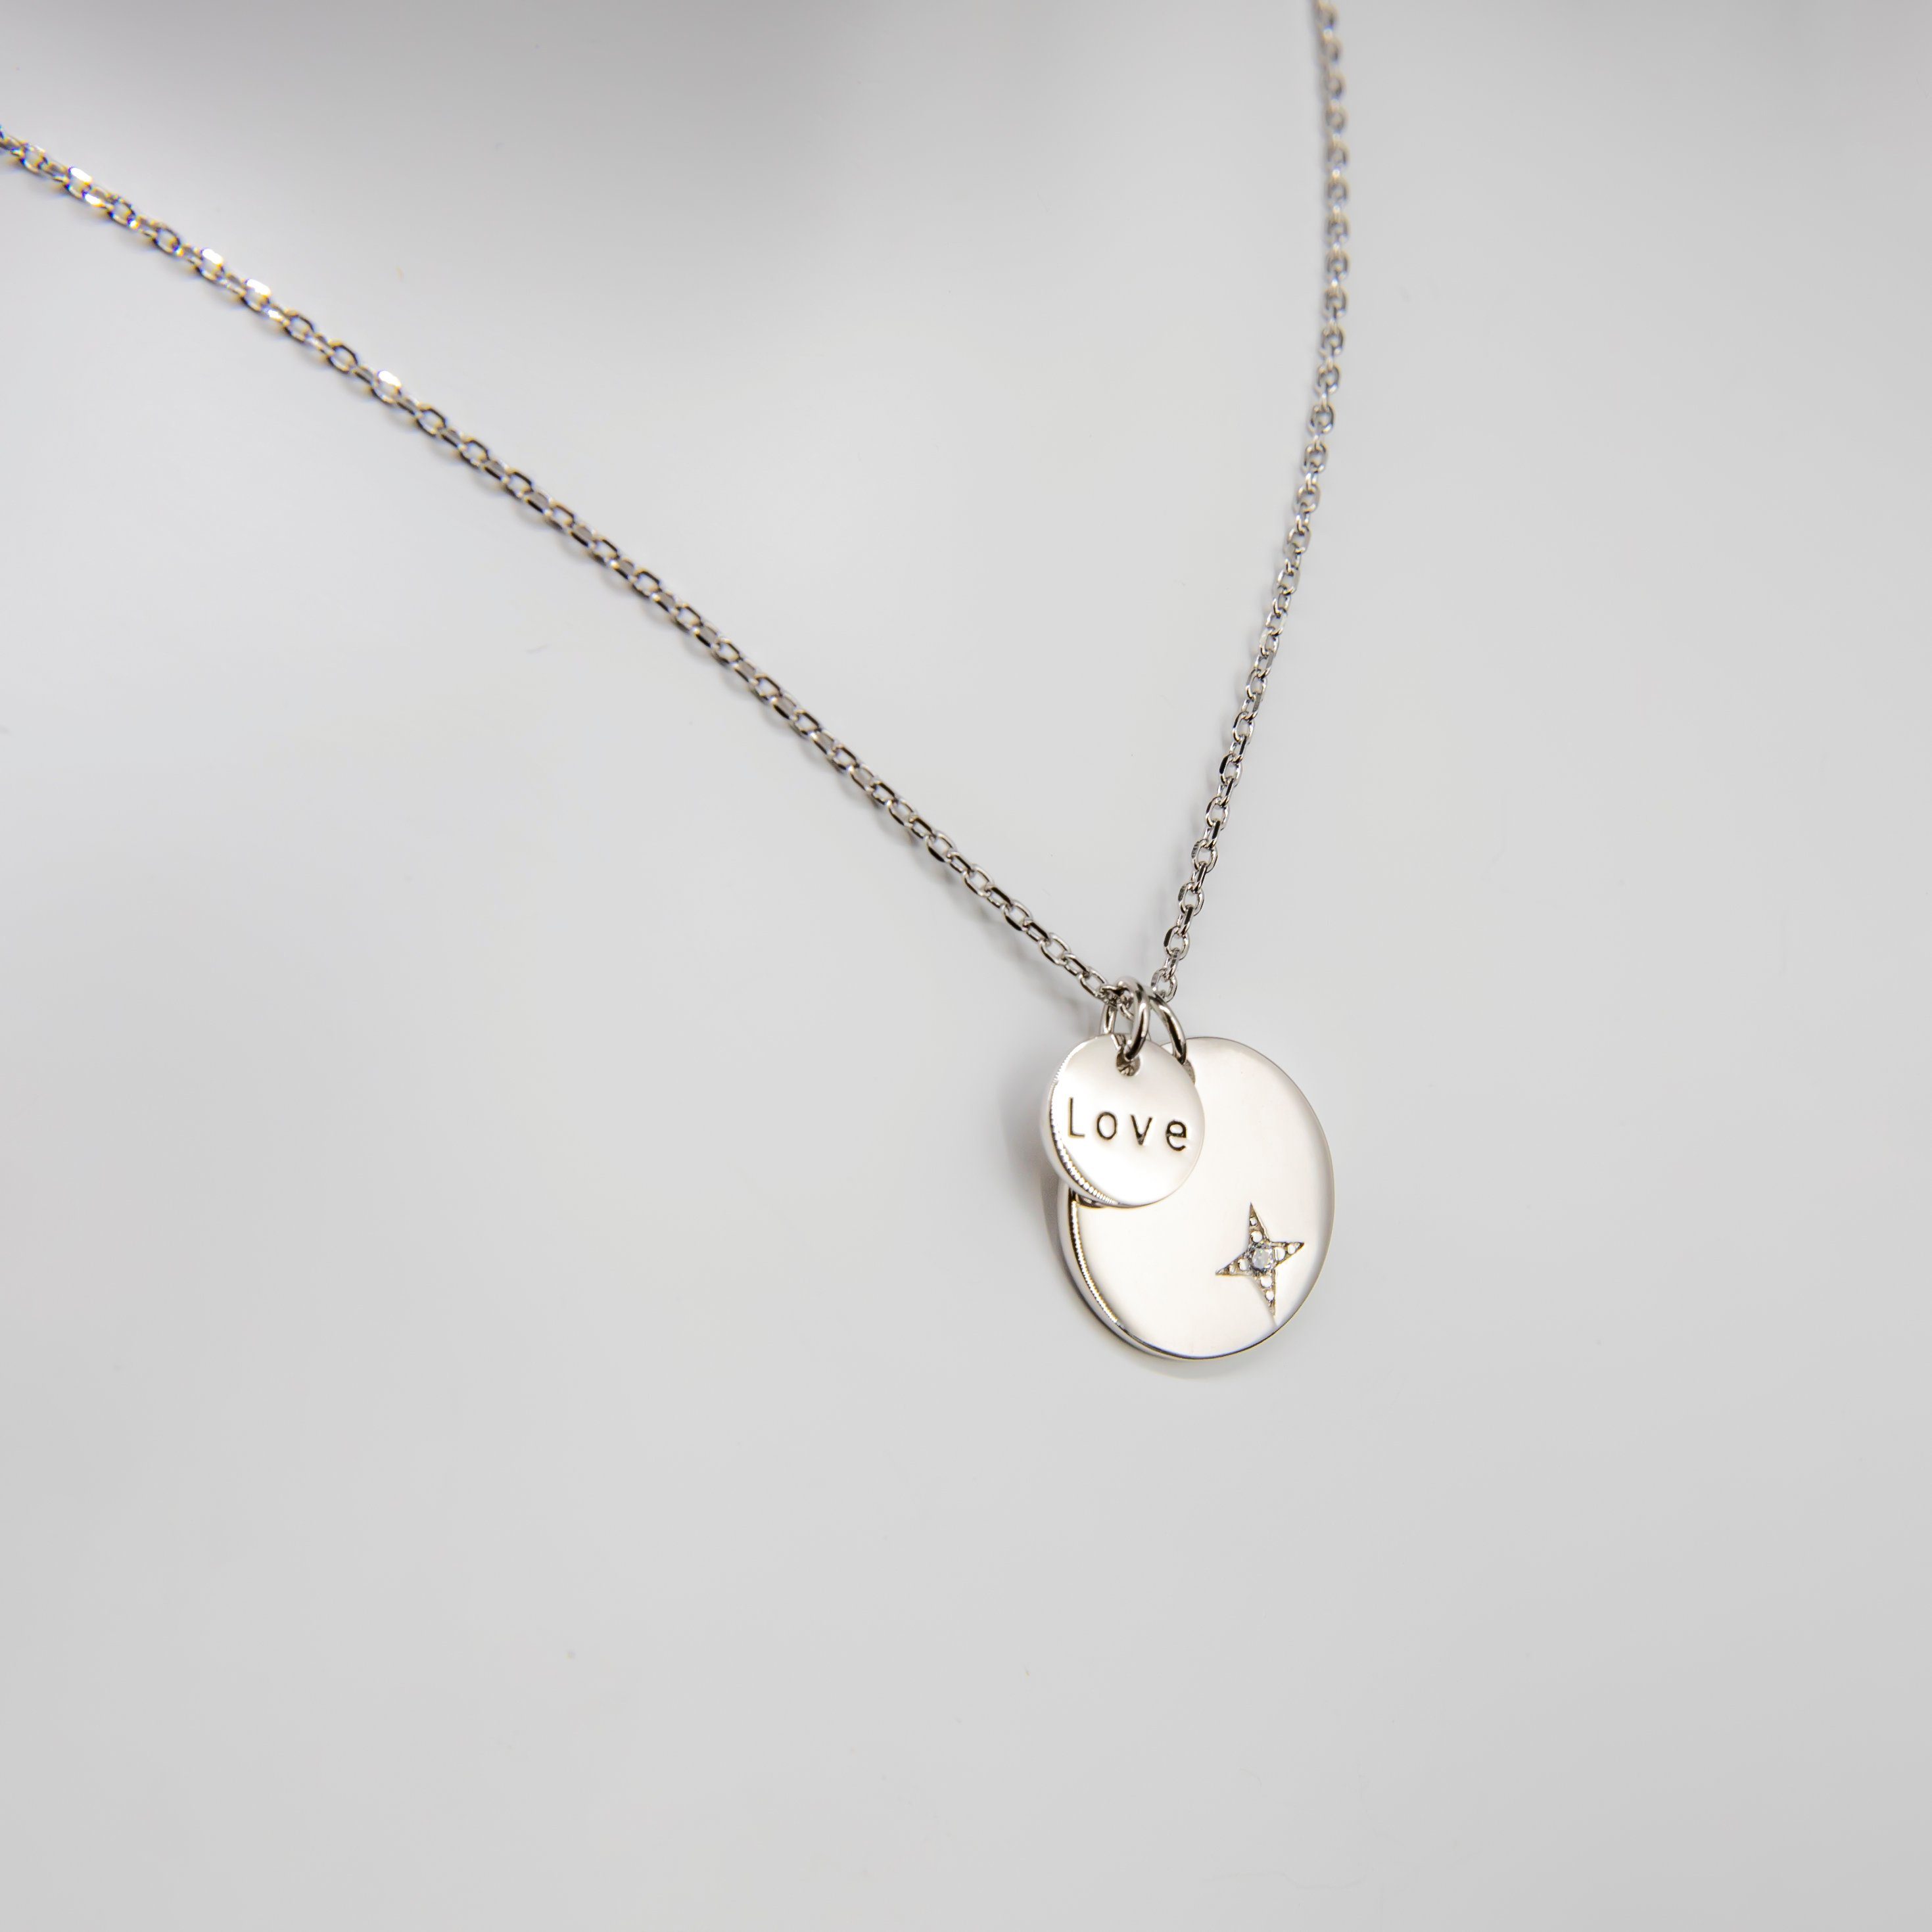 Halskette Damen Silberfarbig 925 Sterling Silber Kette mit Herz mit Rundschliff Zirkonia Steinchen 45 cm Miore Kette 